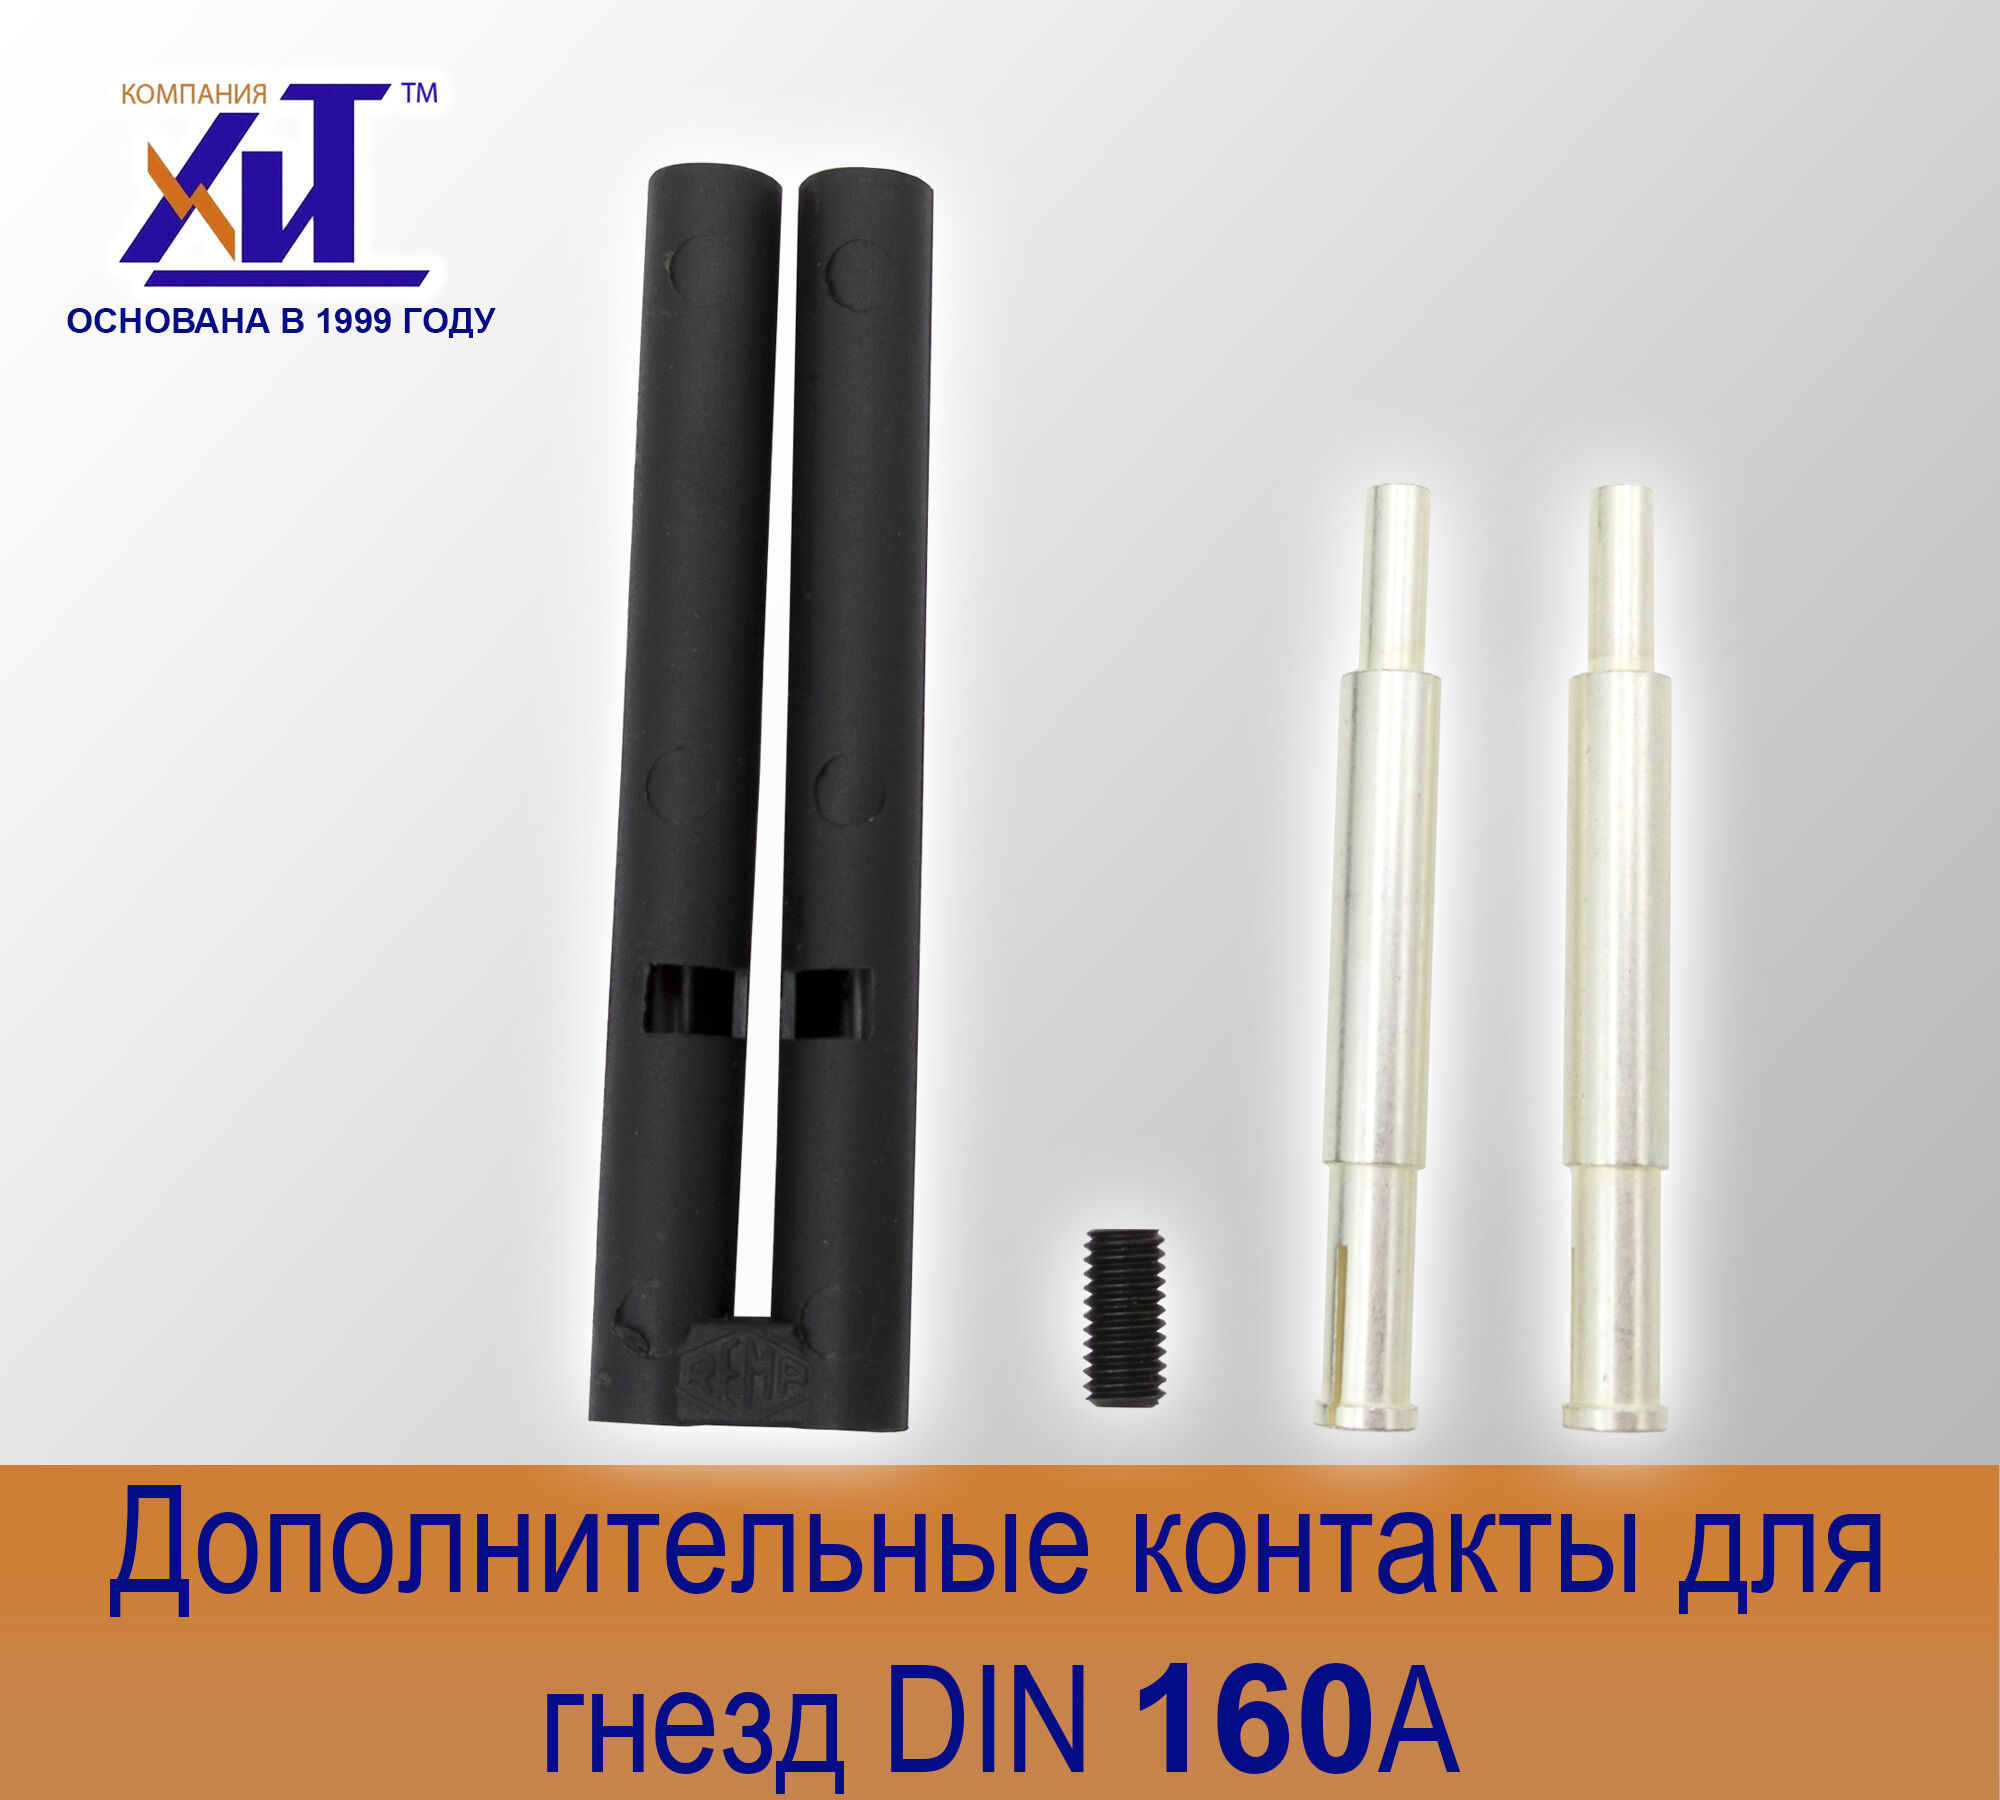 Комплект направляющих контактов DIN 160 А для гнезд